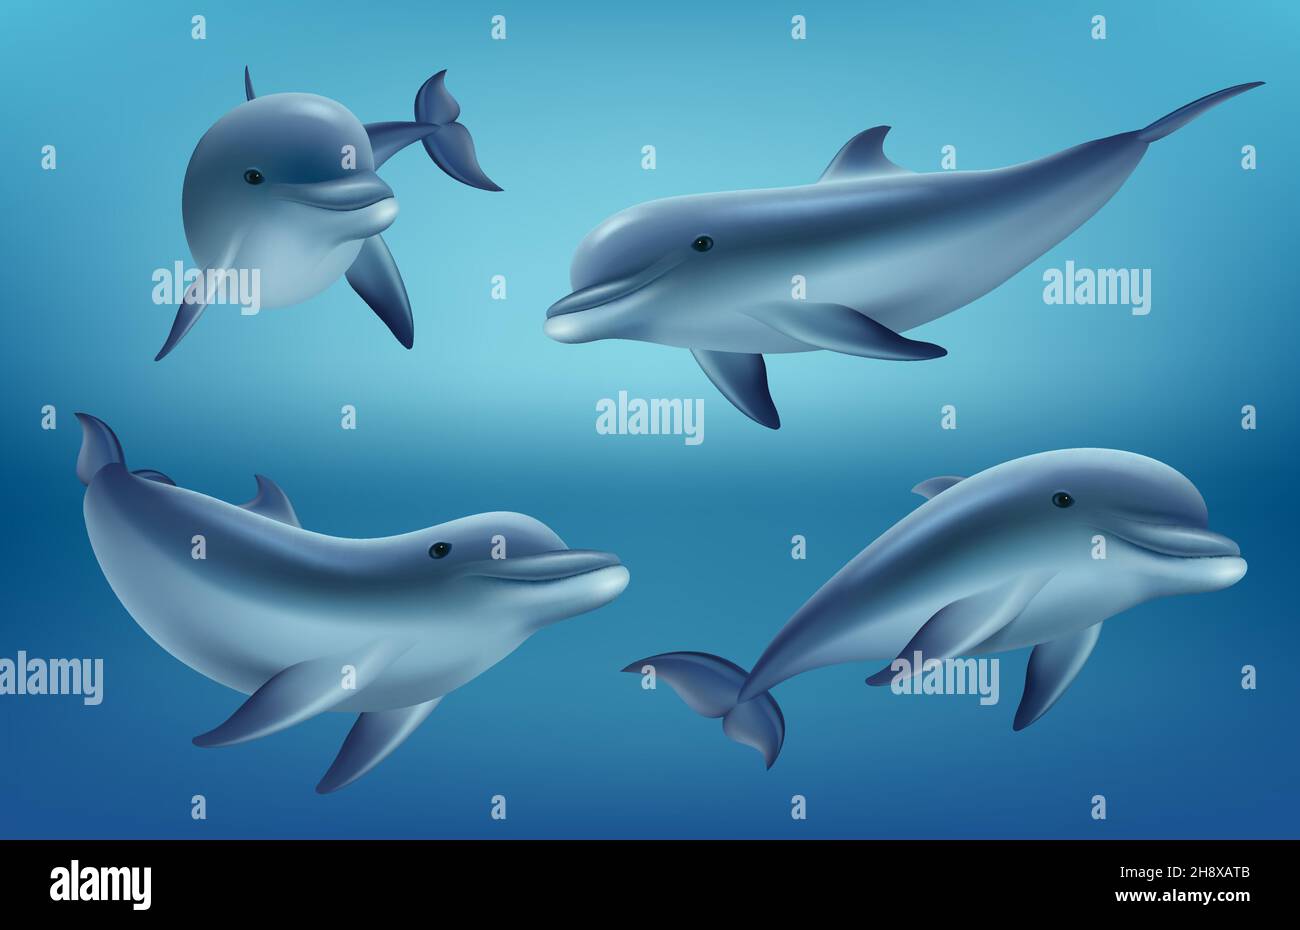 Animales marinos realistas fotografías e imágenes de alta resolución - Alamy